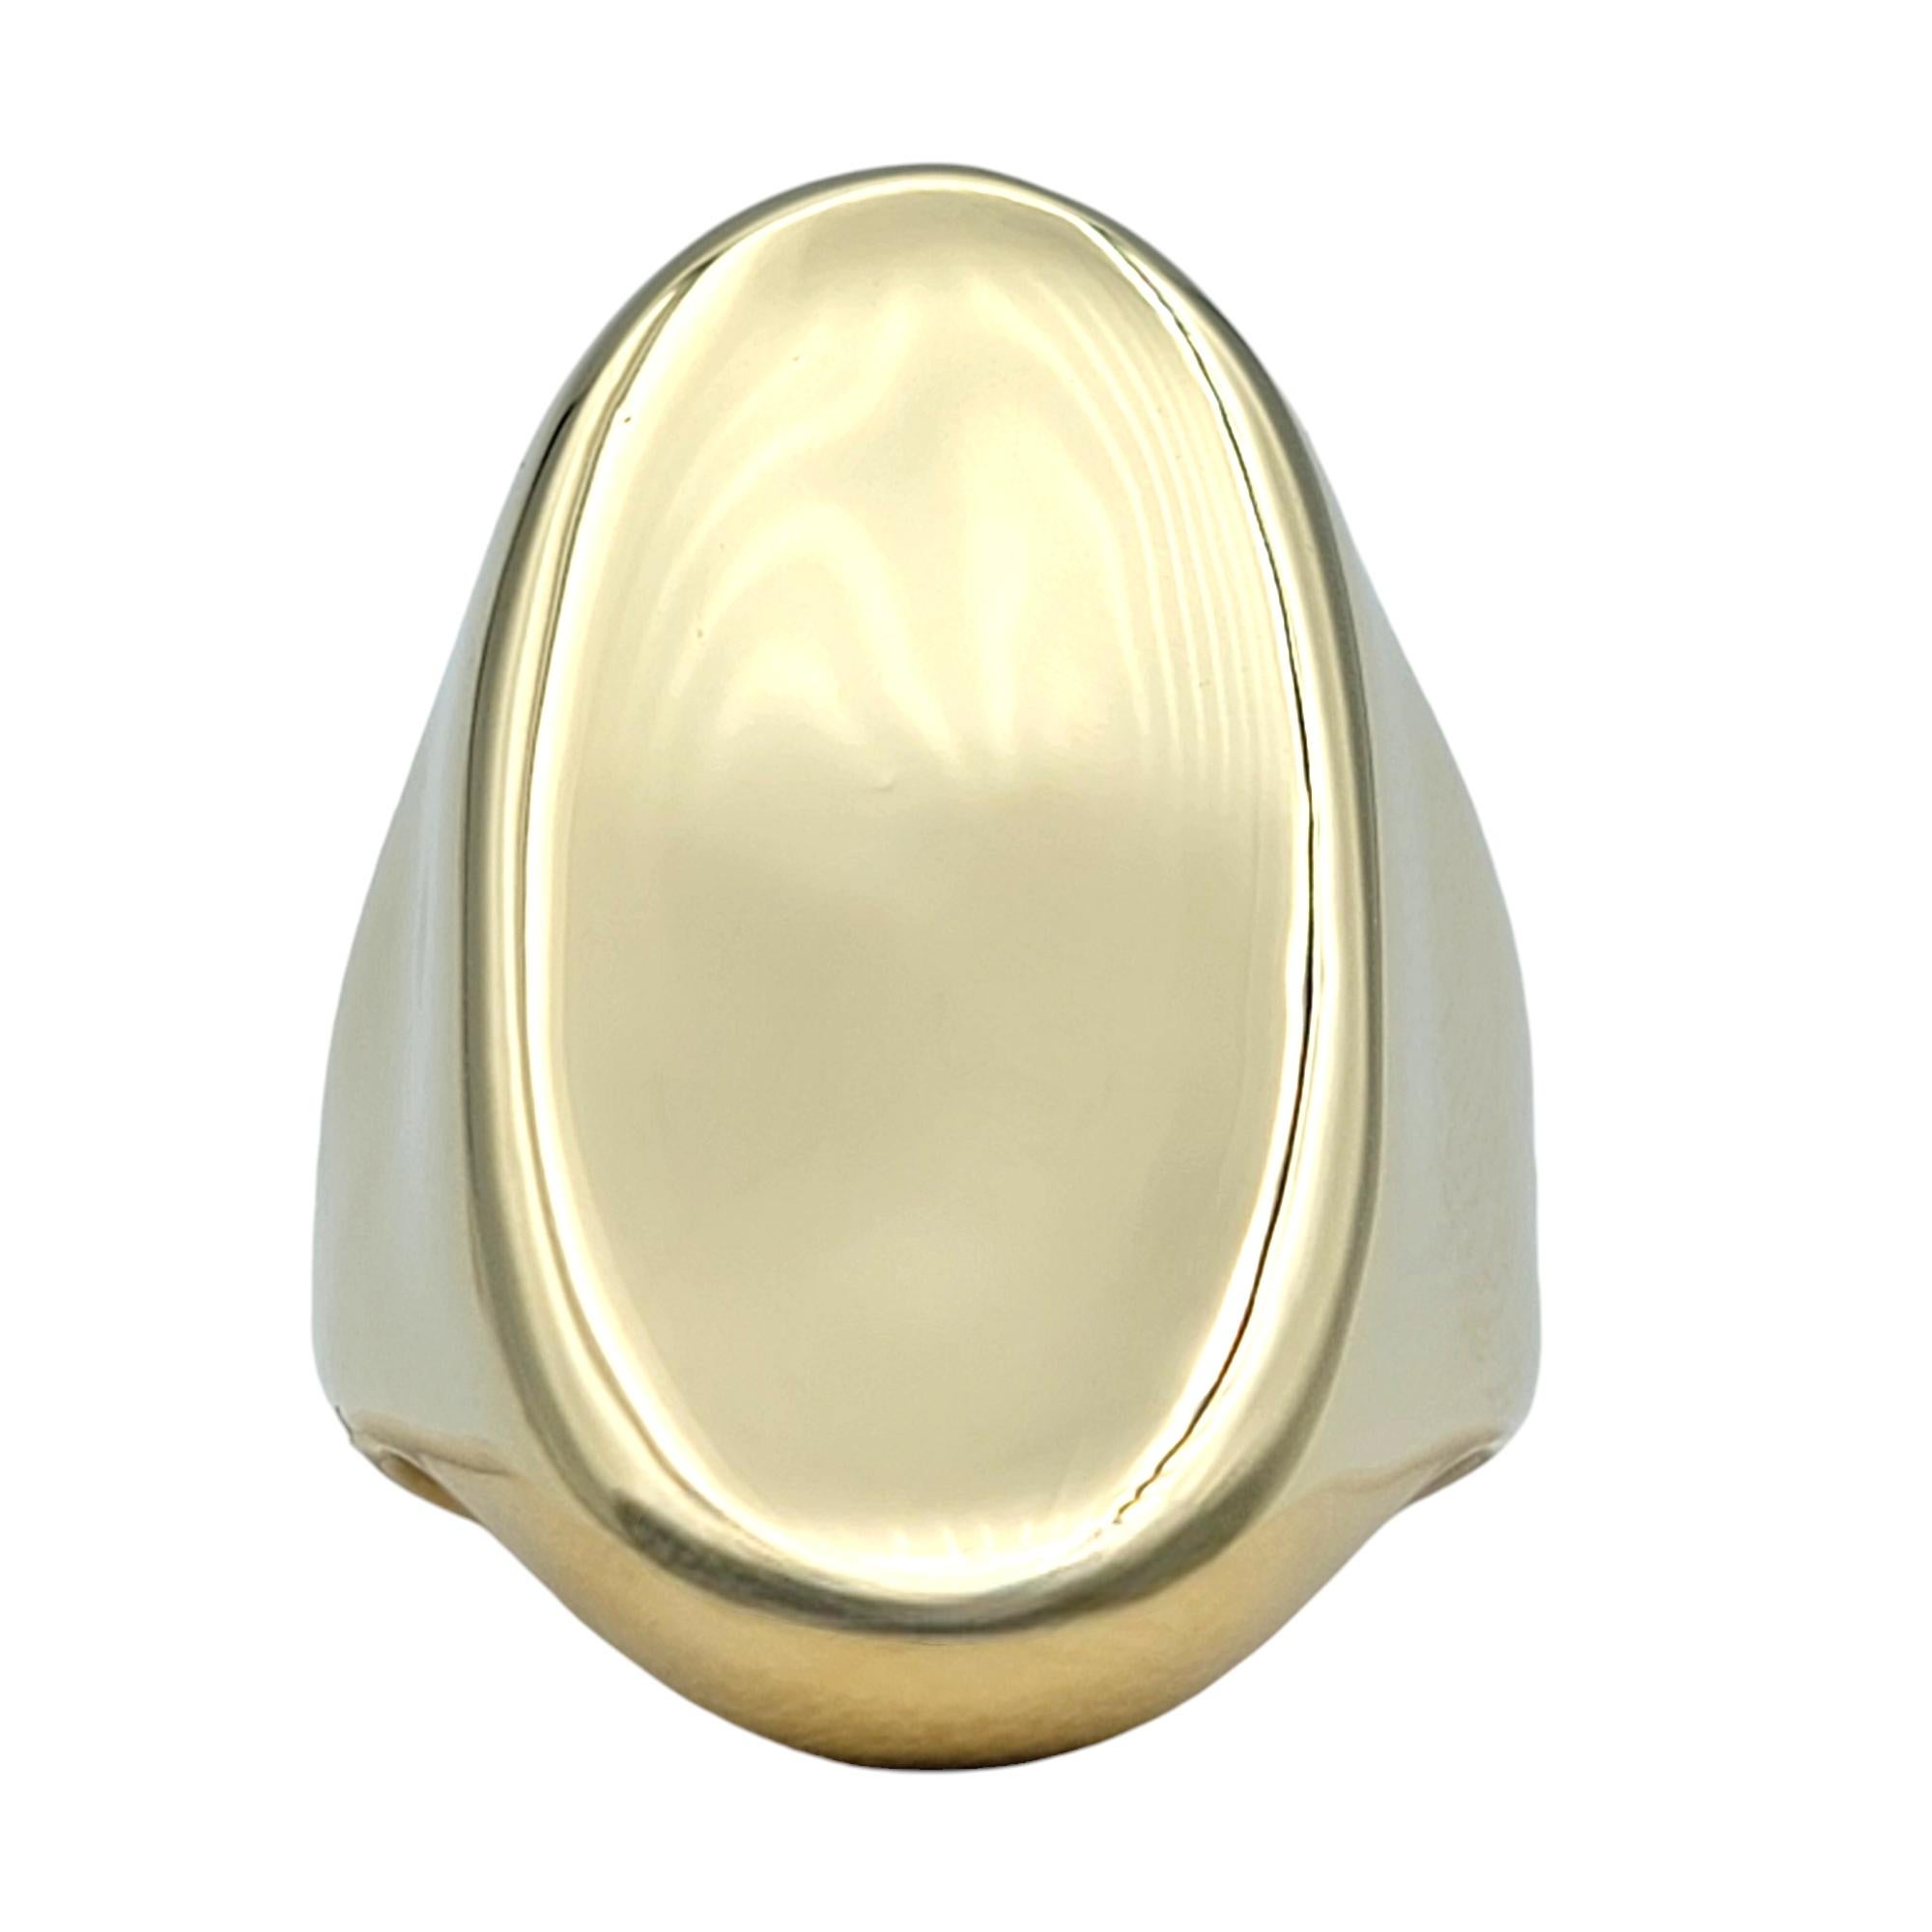 Ringgröße: 6

Dieser wunderschöne ovale Ring im konkaven Stil von Robert Lee Morris RLM Studio strahlt mit seinem schlanken Design und seinen luxuriösen MATERIALIEN zeitgenössische Eleganz aus. Dieser Ring aus glänzendem 14-karätigem Gelbgold hat